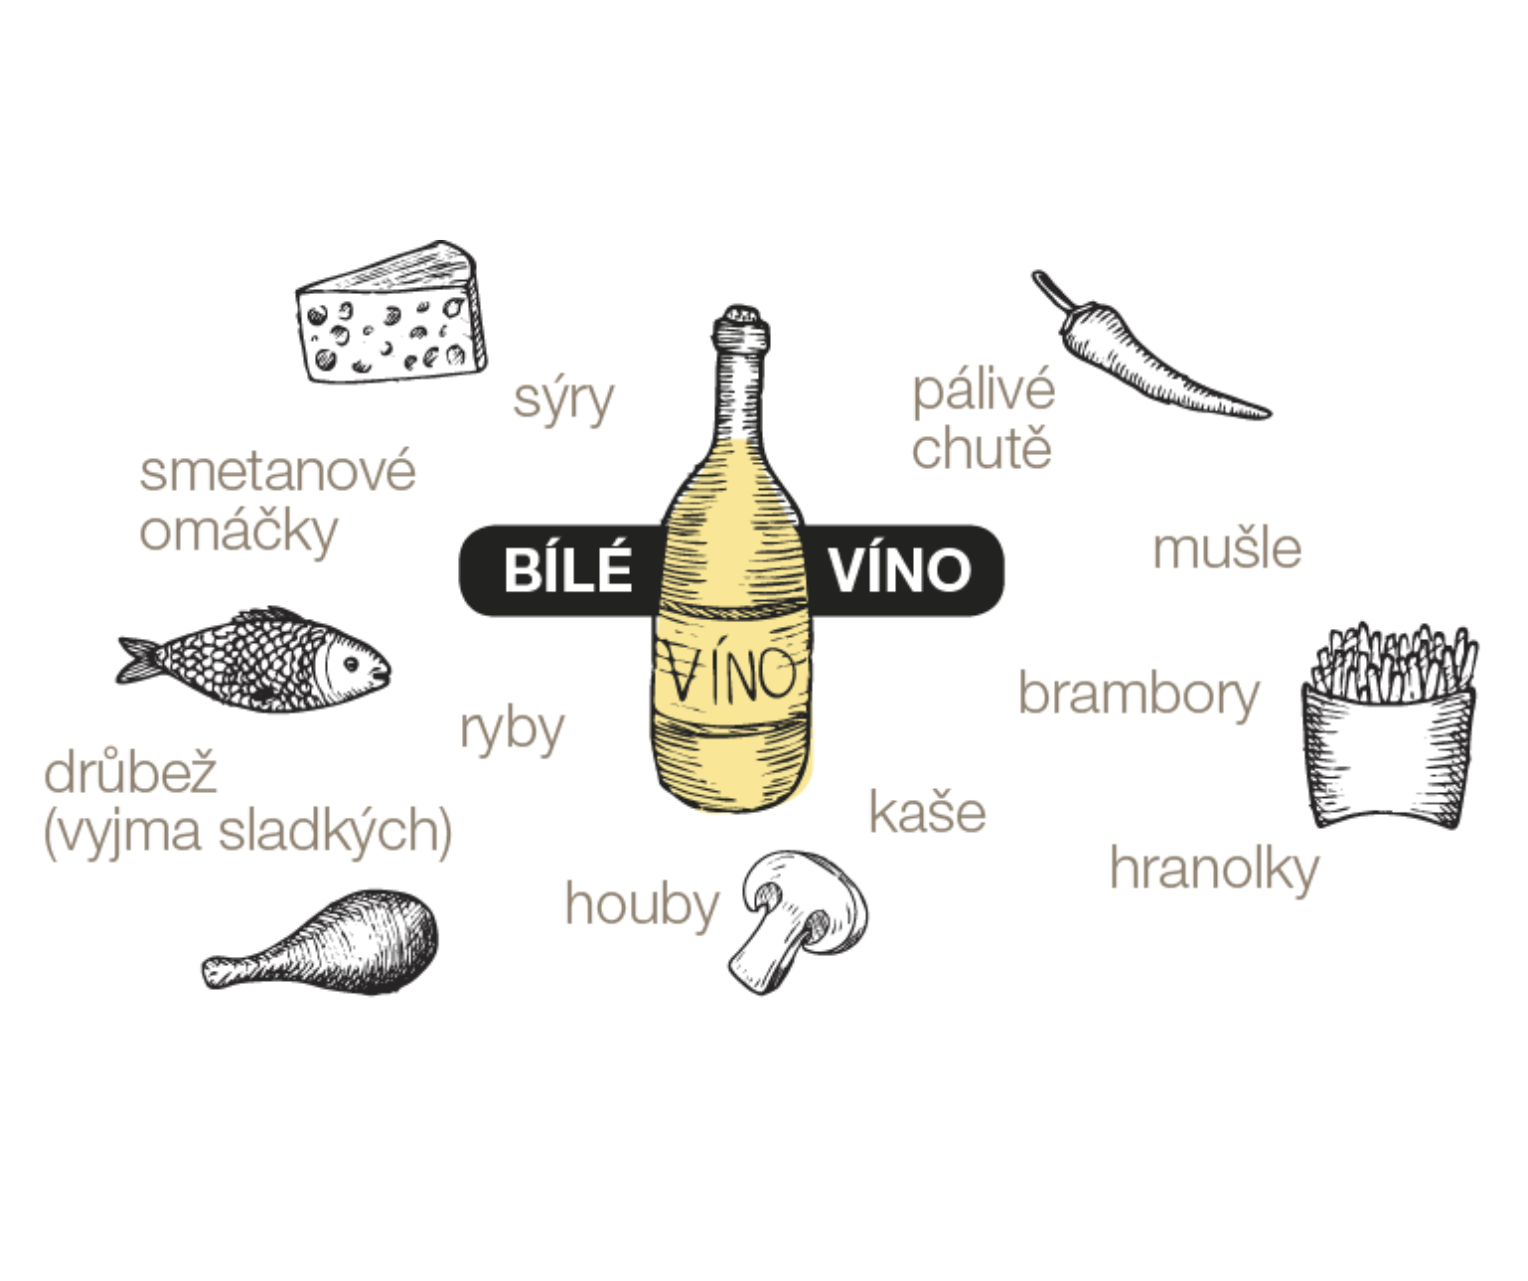 Jednoduchá infografika o párování bílého vína, tipy na recepty najdete na Jakvkuchyni.cz! (Zdroj: Jakvkuchyni.cz)